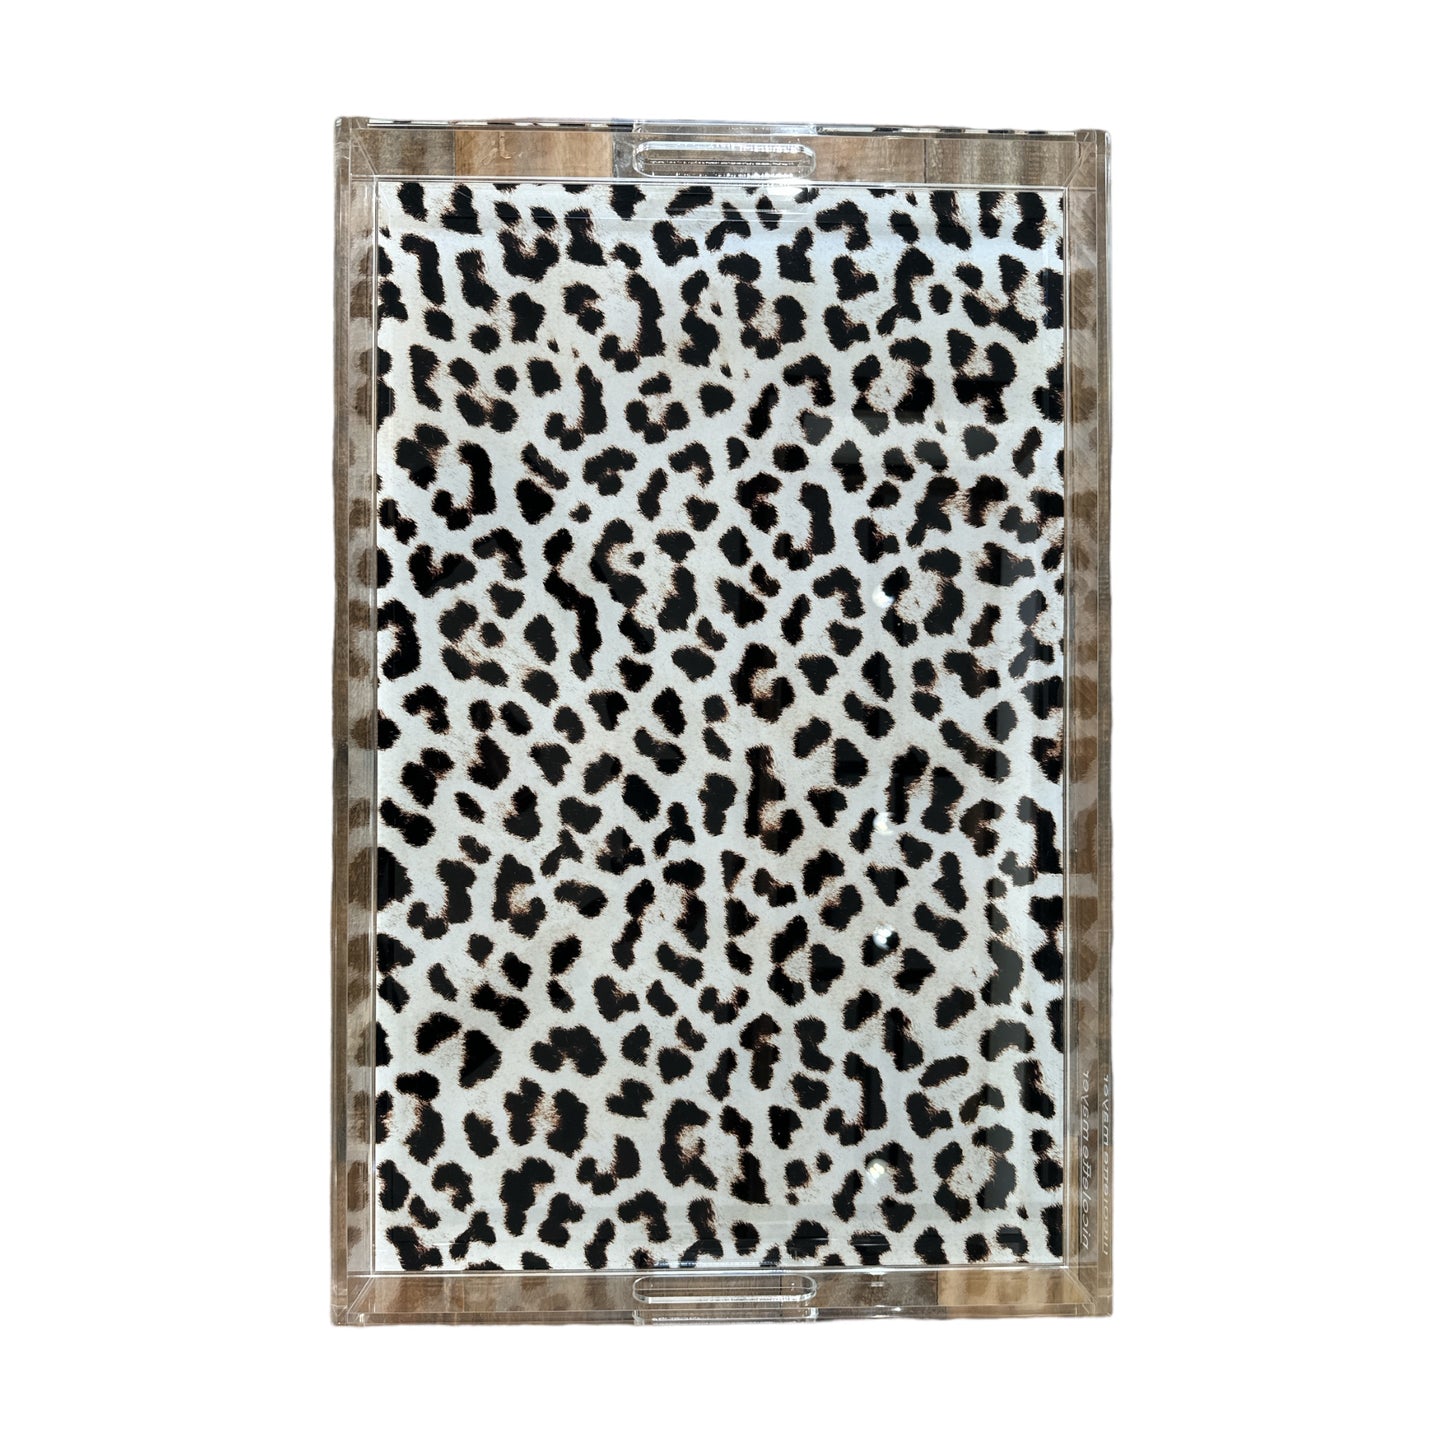 Leopard Print Acrylic Tray